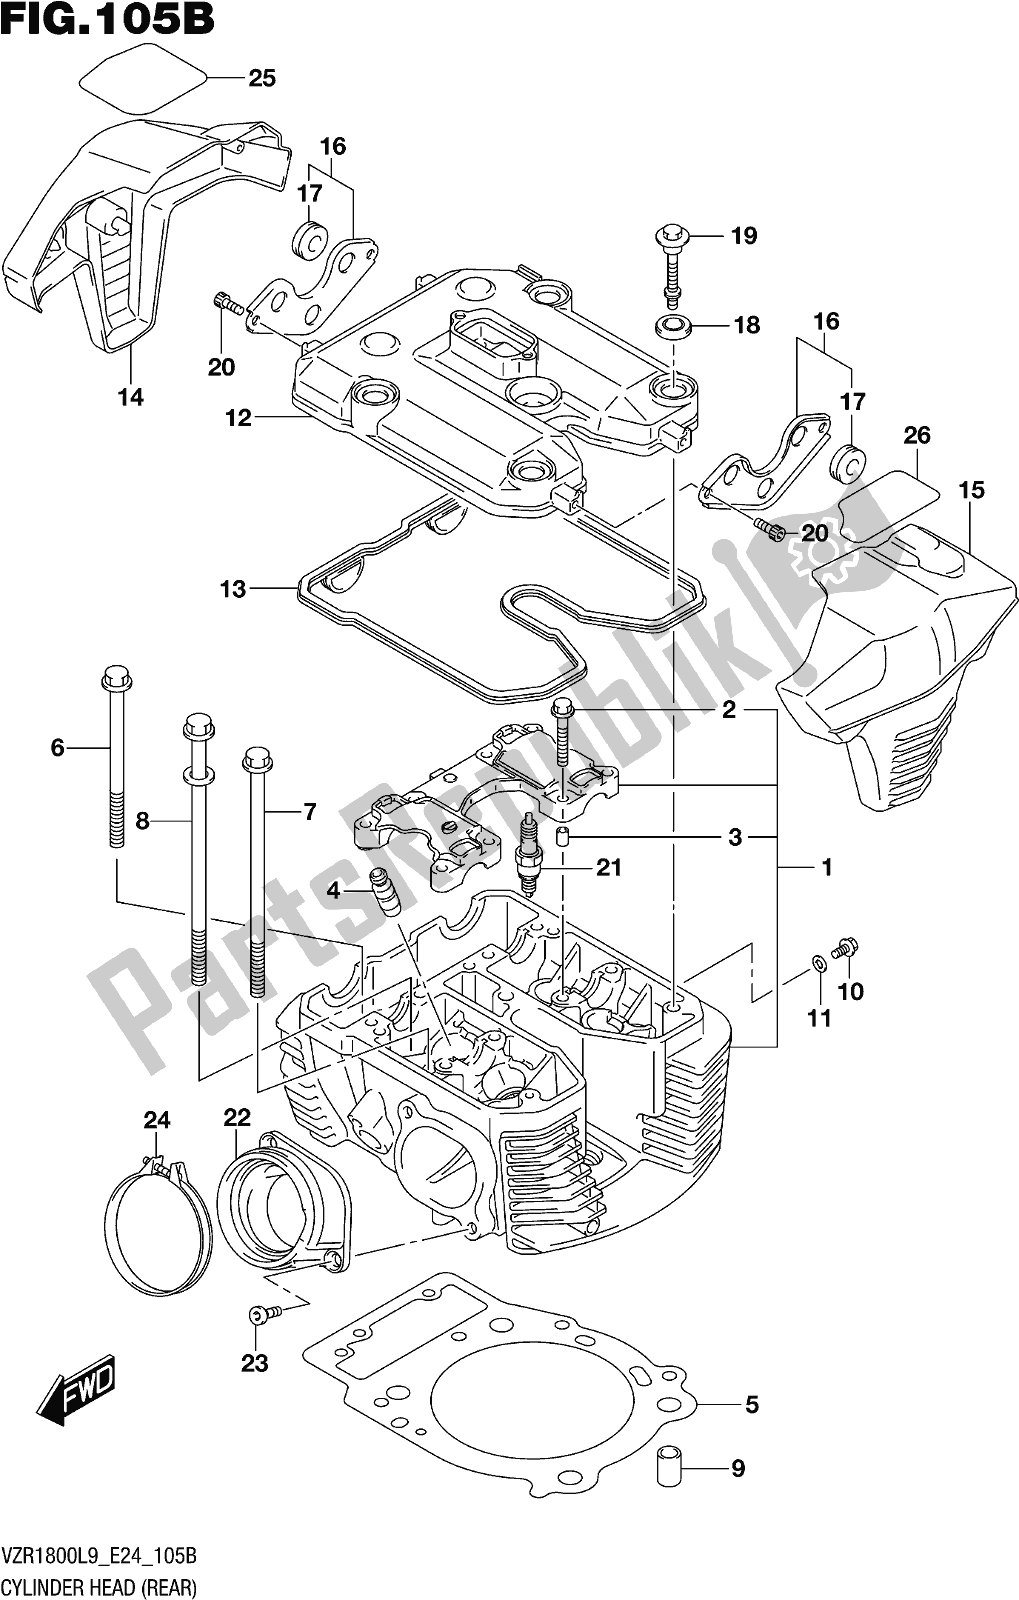 Toutes les pièces pour le Fig. 105b Cylinder Head (rear) (vzr1800bzl9 E24) du Suzuki VZR 1800 BZ 2019